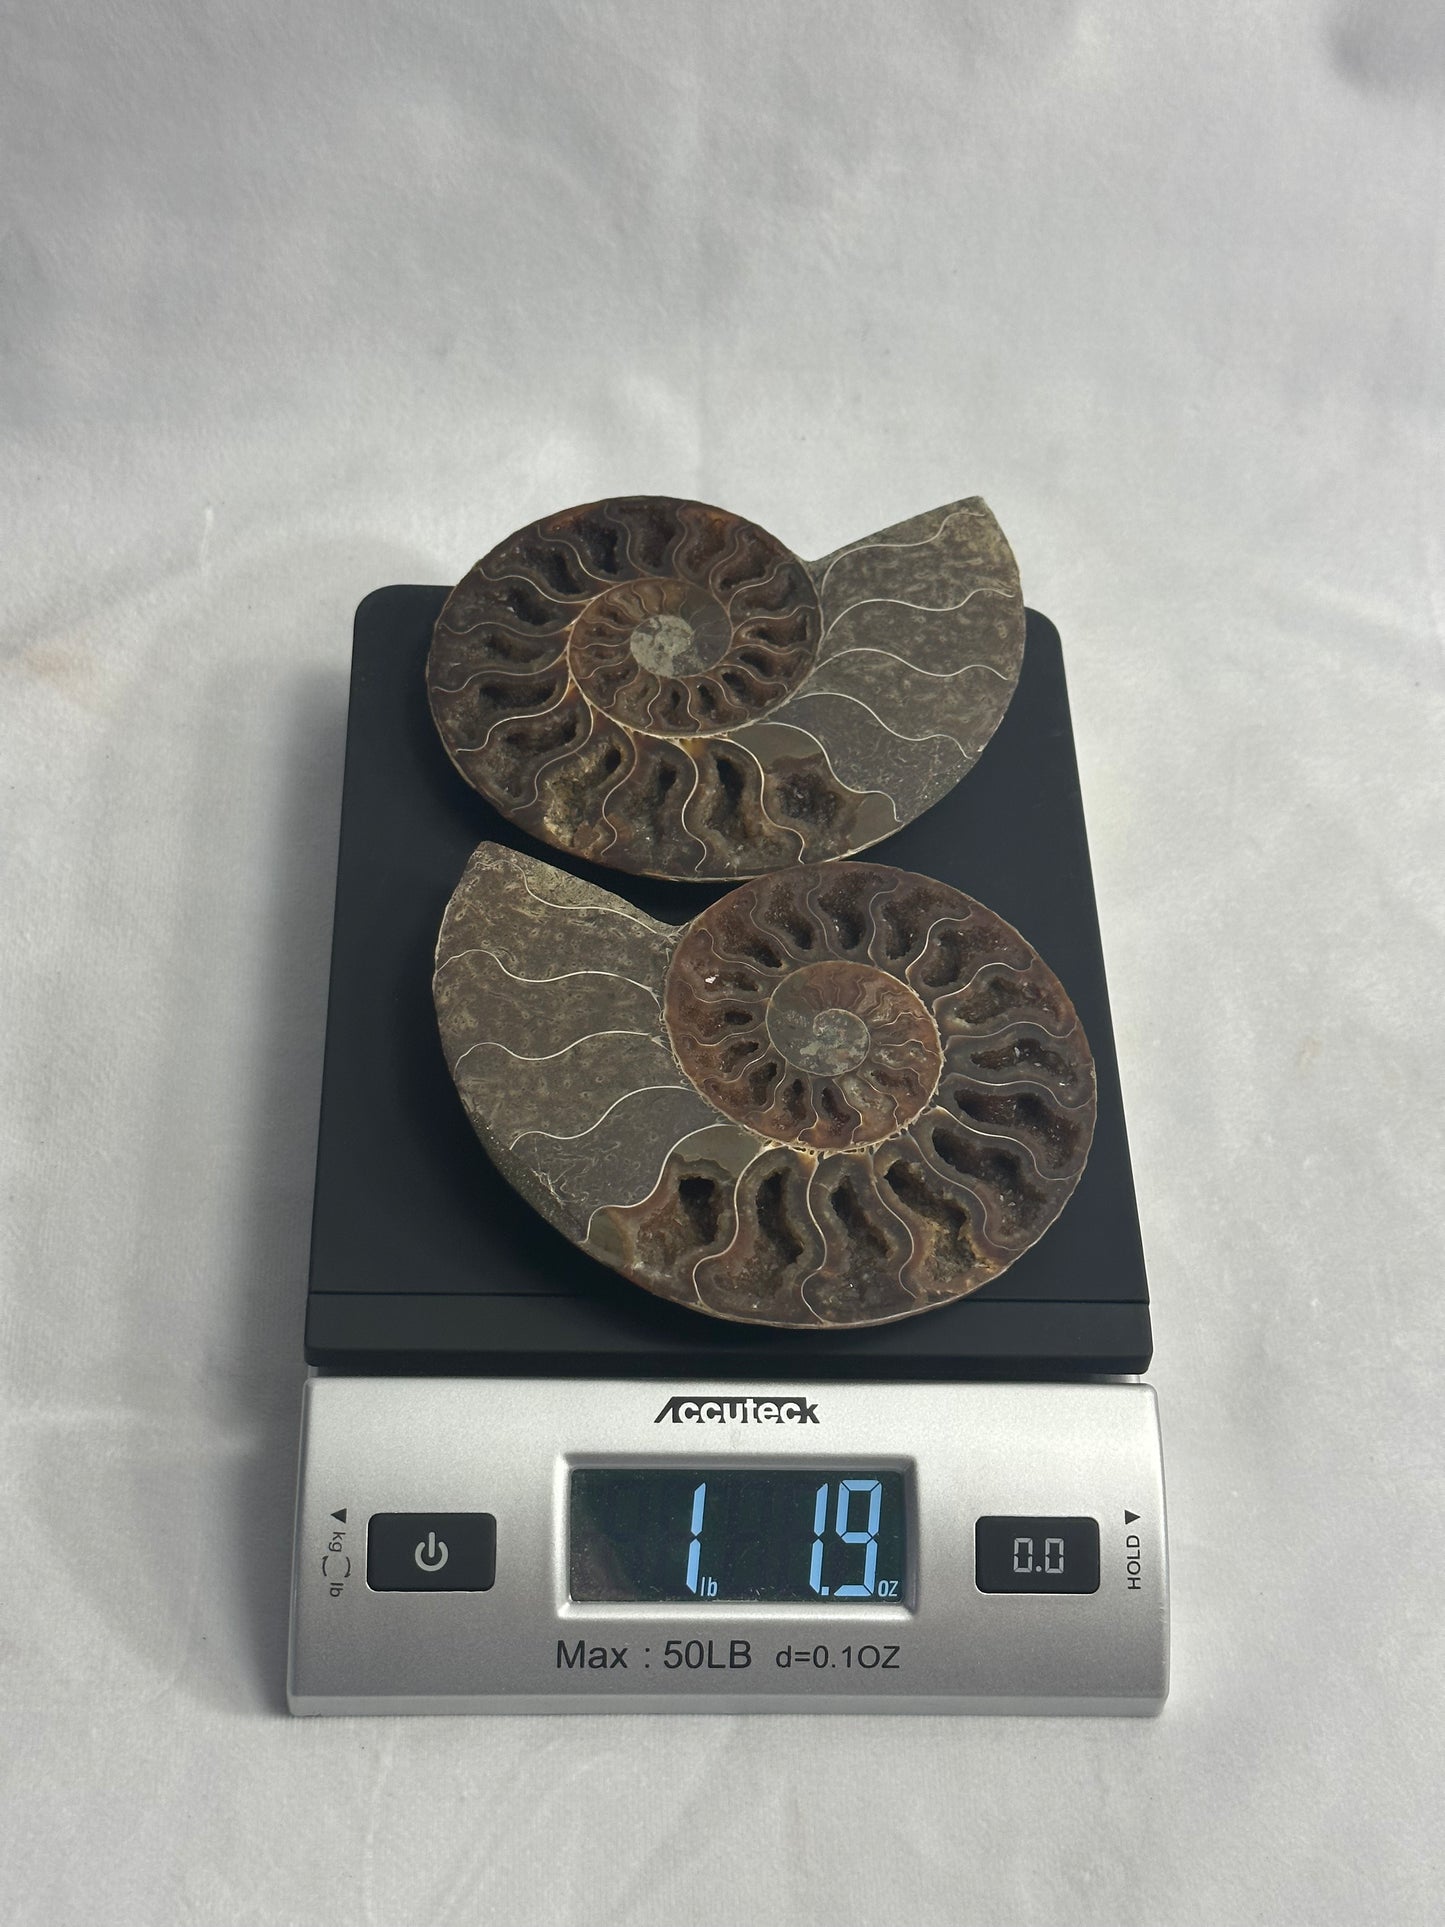 Dark Split Polished Ammonite